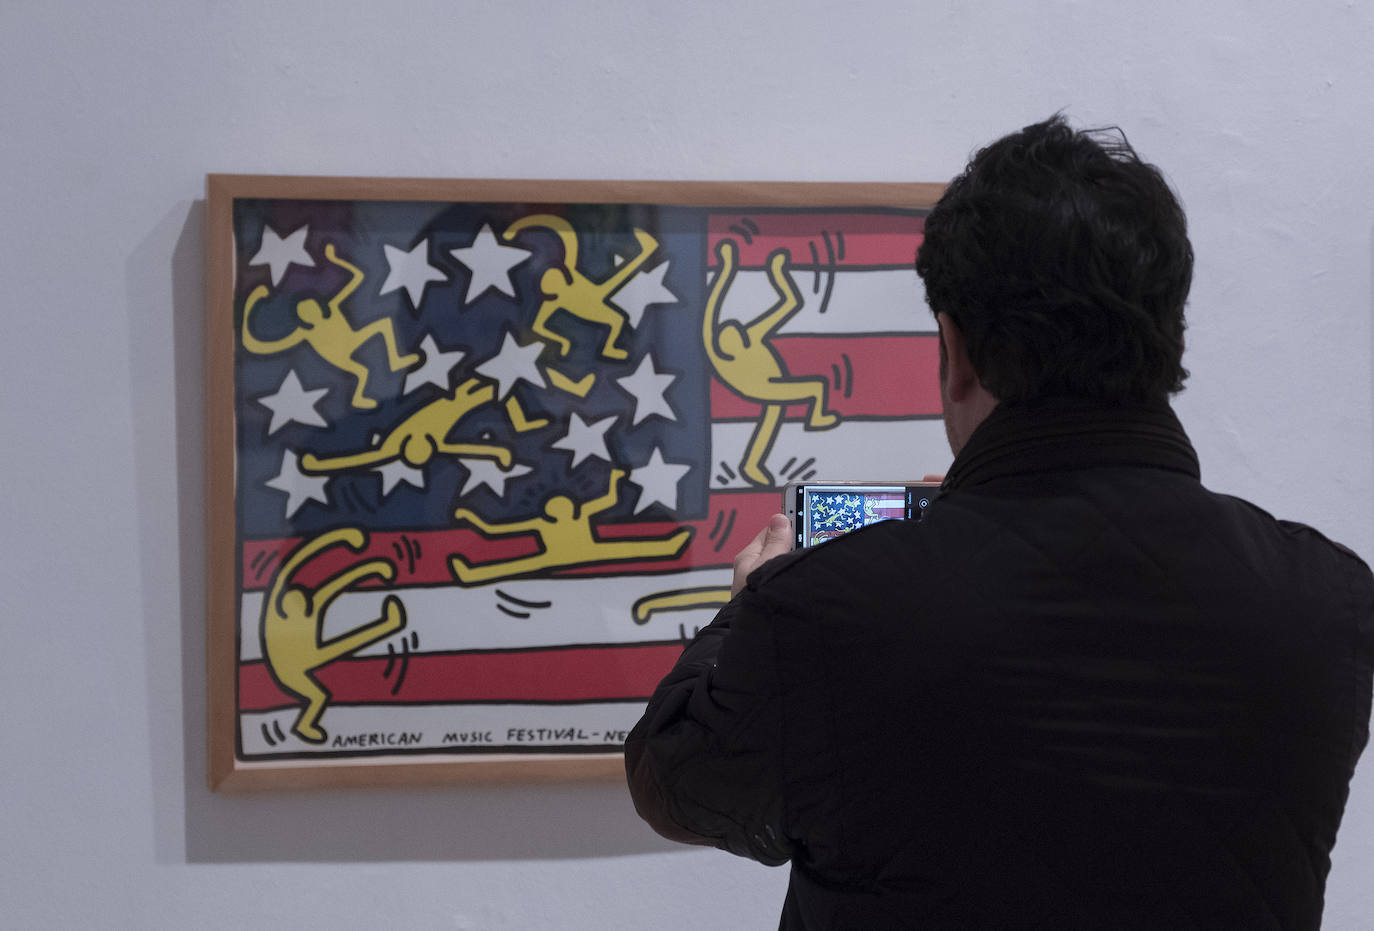 La sala de exposiciones de La Pasión acoge la muestra 'Arte para todos' de Keith Haring.